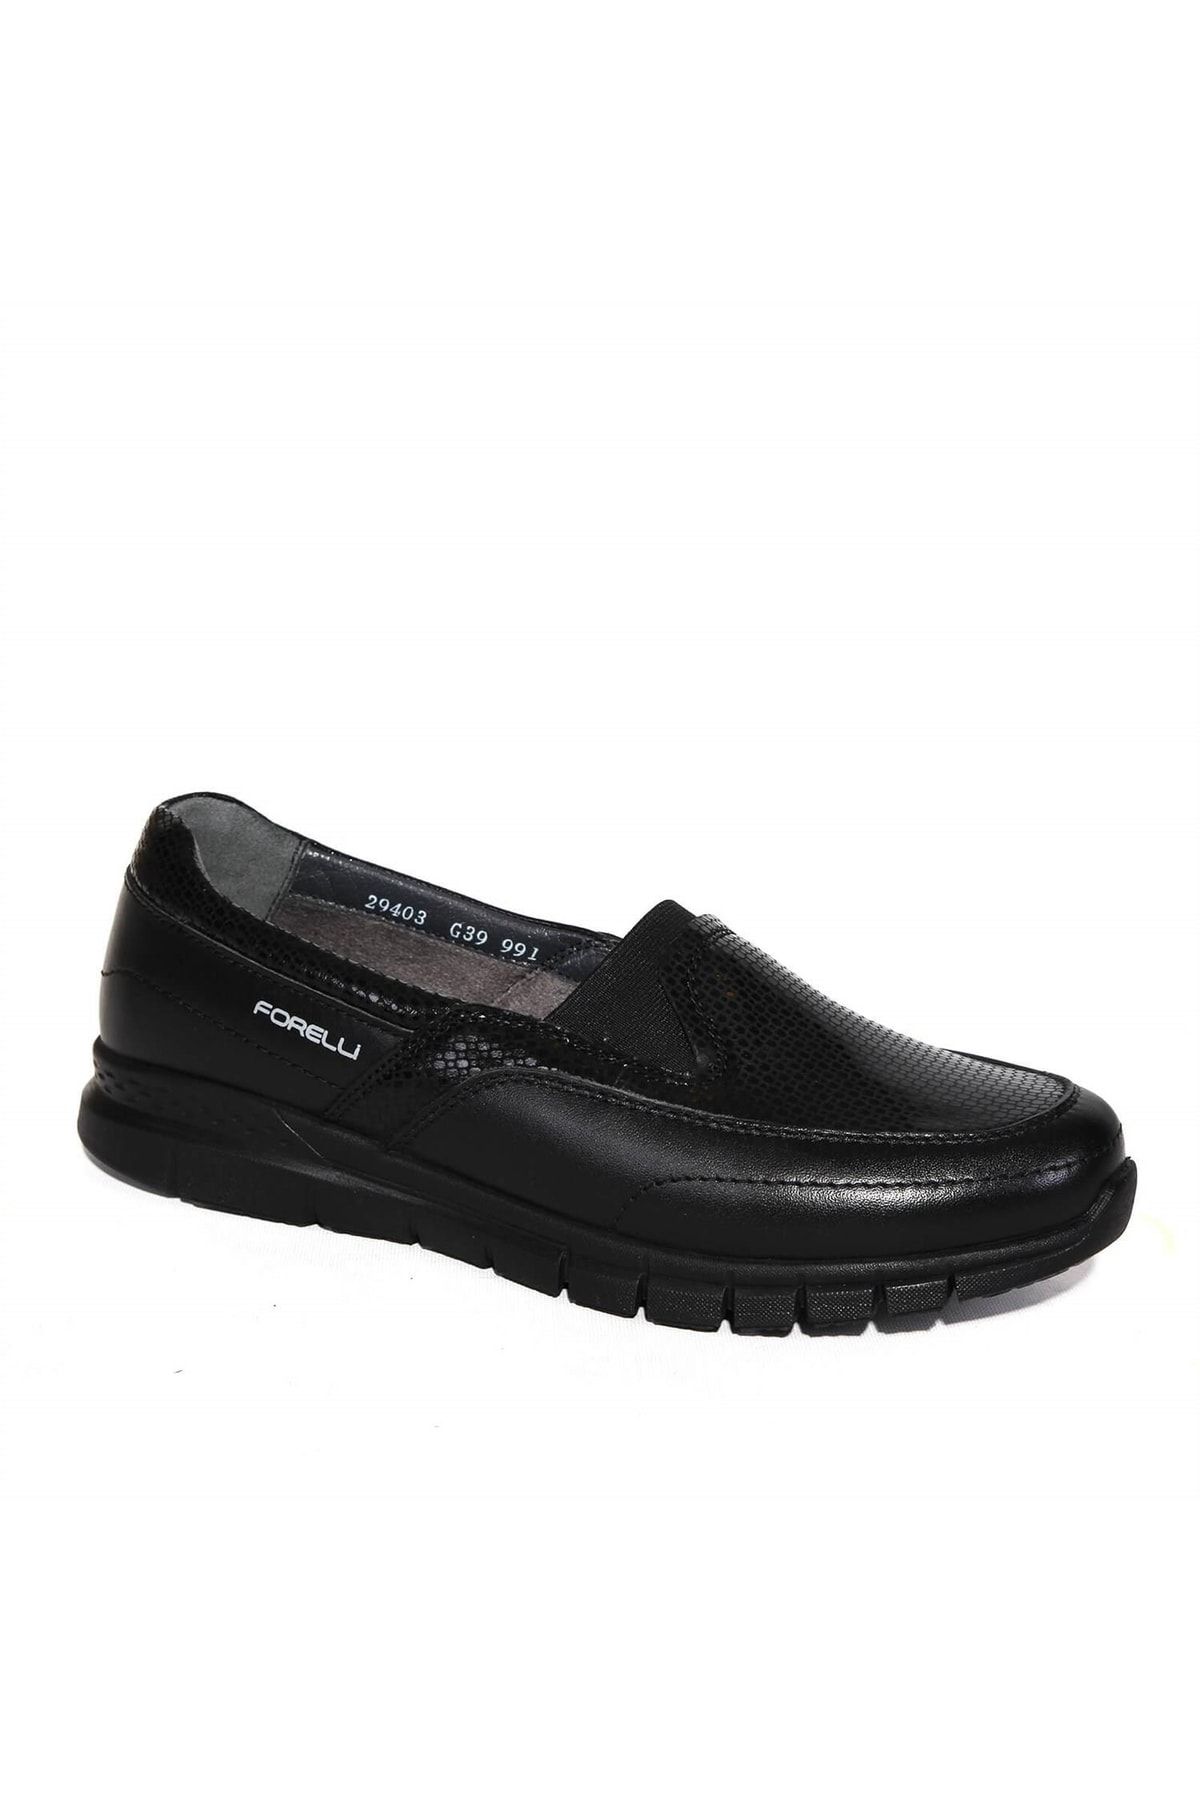 Forelli Efes-g Comfort Kadın Ayakkabı Siyah